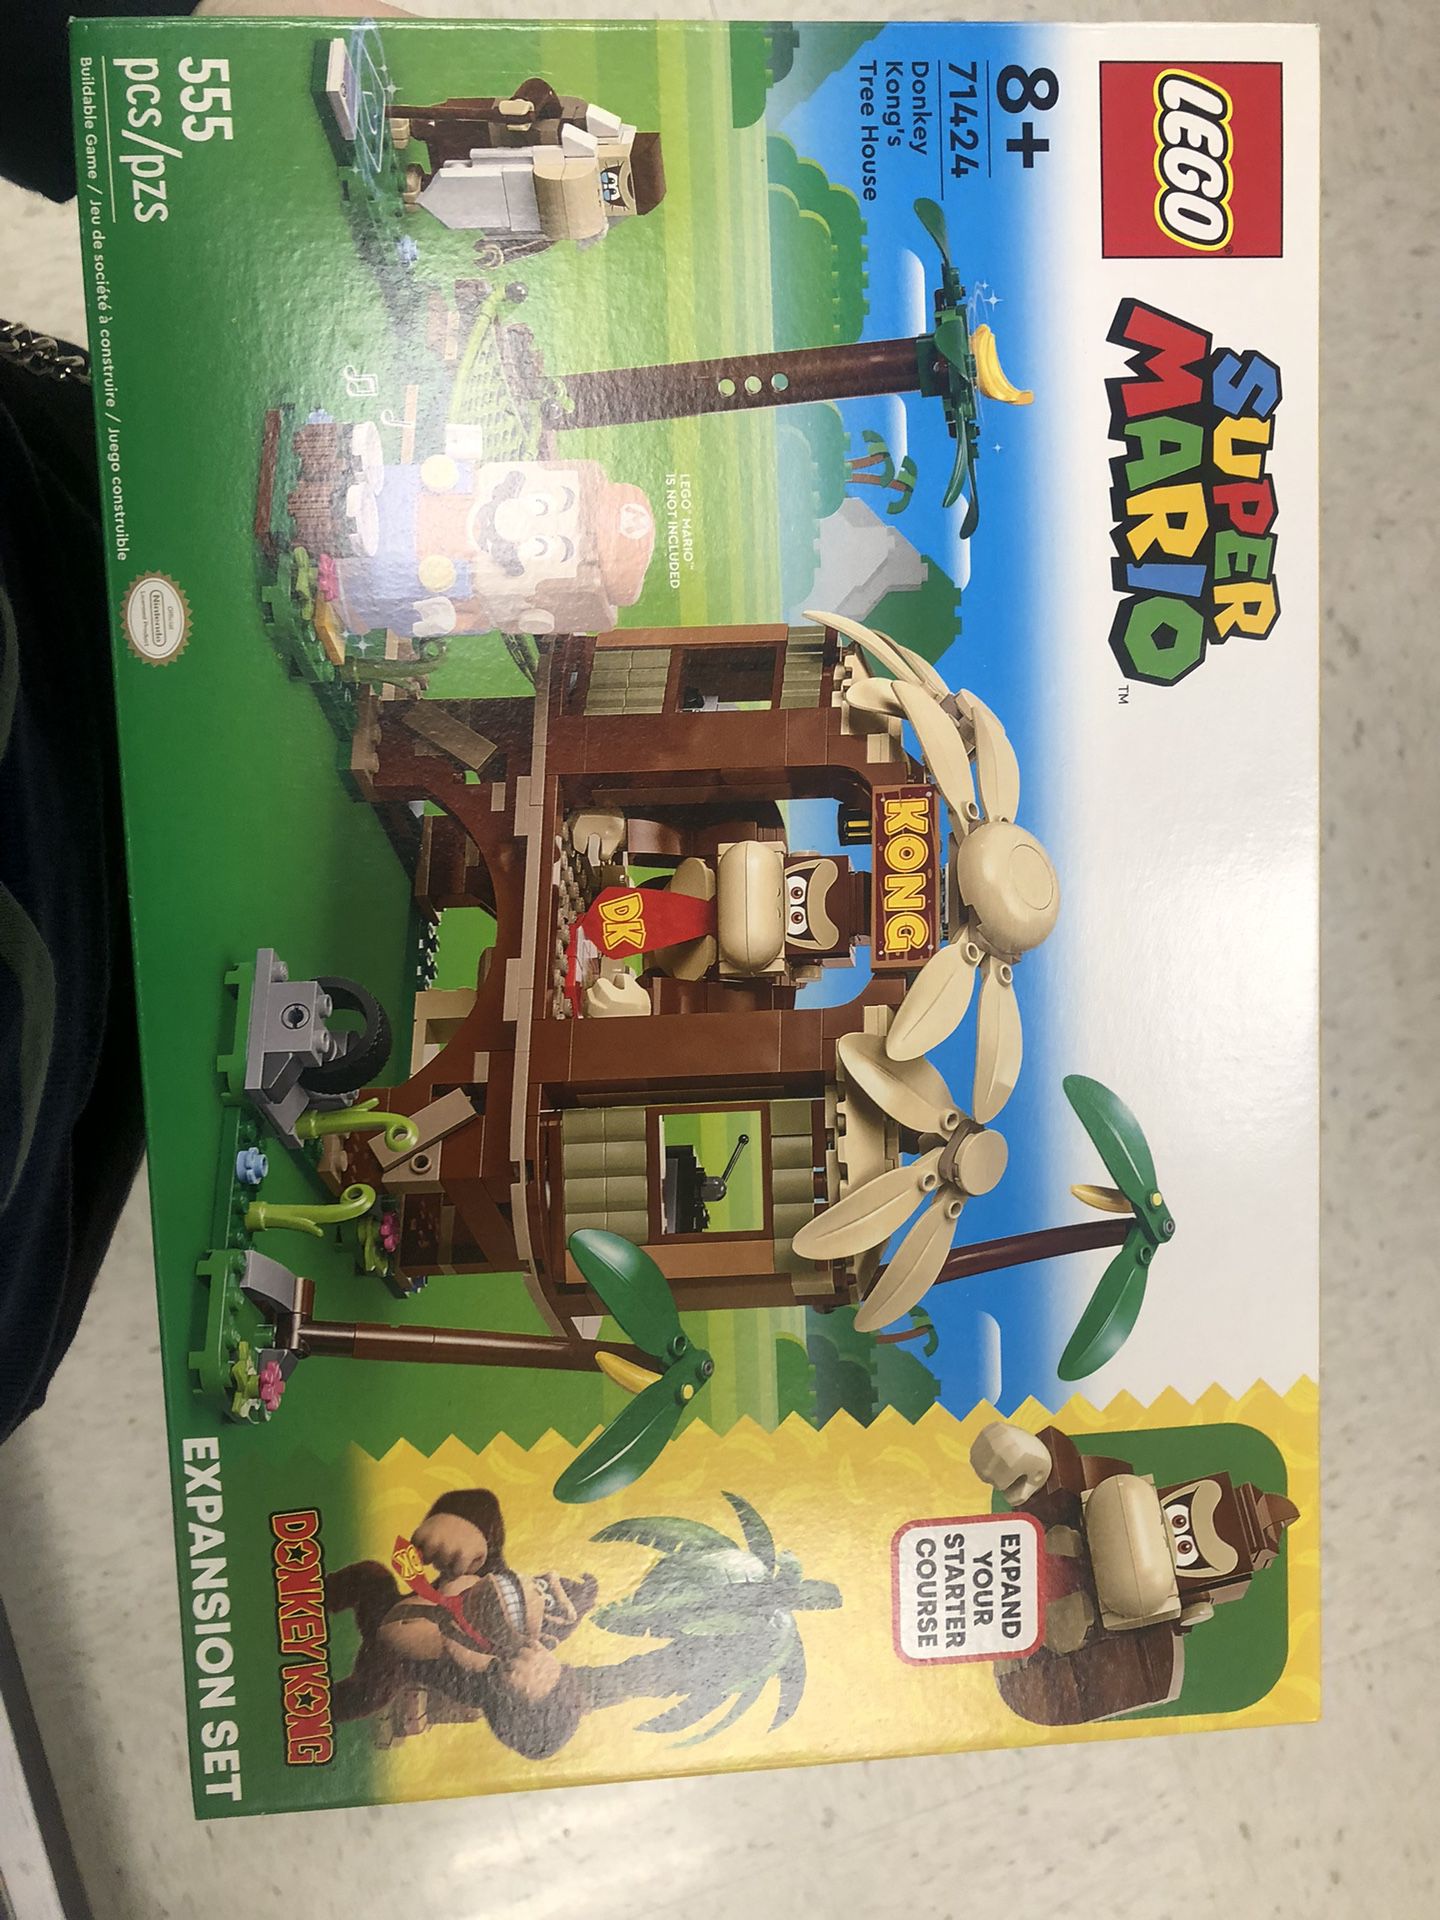 Donkey Kong lego set 